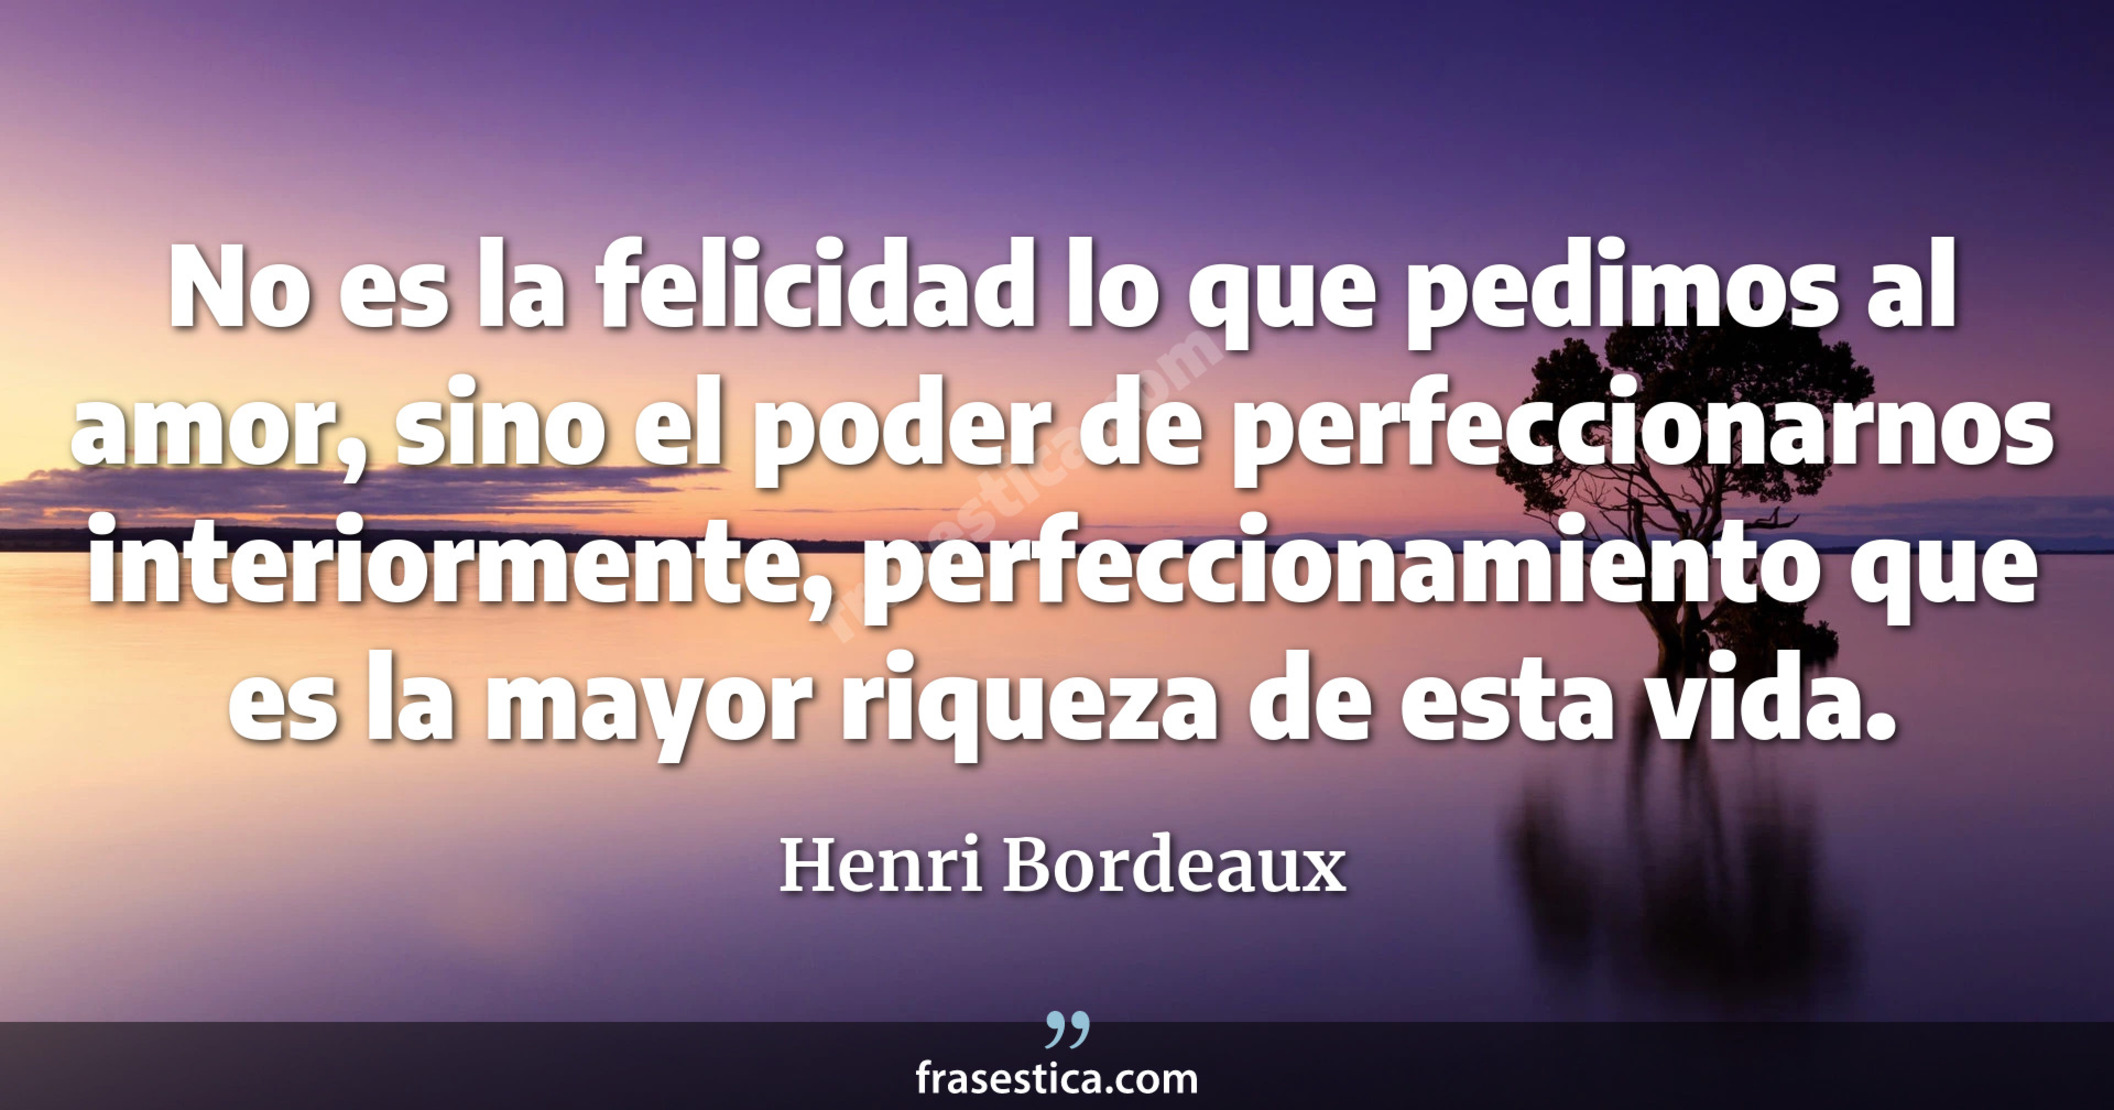 No es la felicidad lo que pedimos al amor, sino el poder de perfeccionarnos interiormente, perfeccionamiento que es la mayor riqueza de esta vida. - Henri Bordeaux